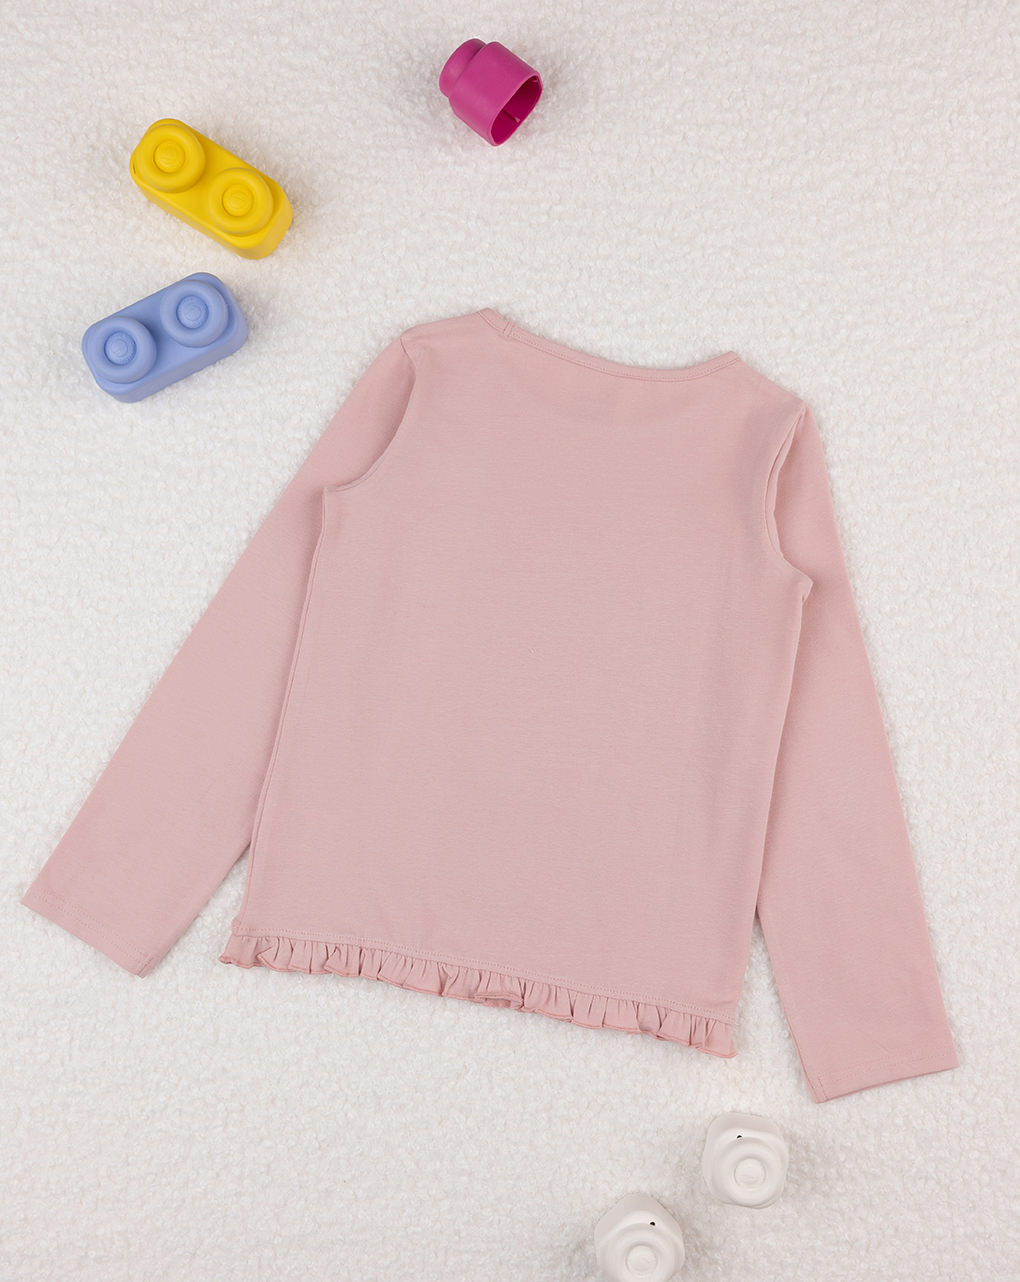 παιδική μπλούζα ροζ με σκυλάκι για κορίτσι - Prénatal